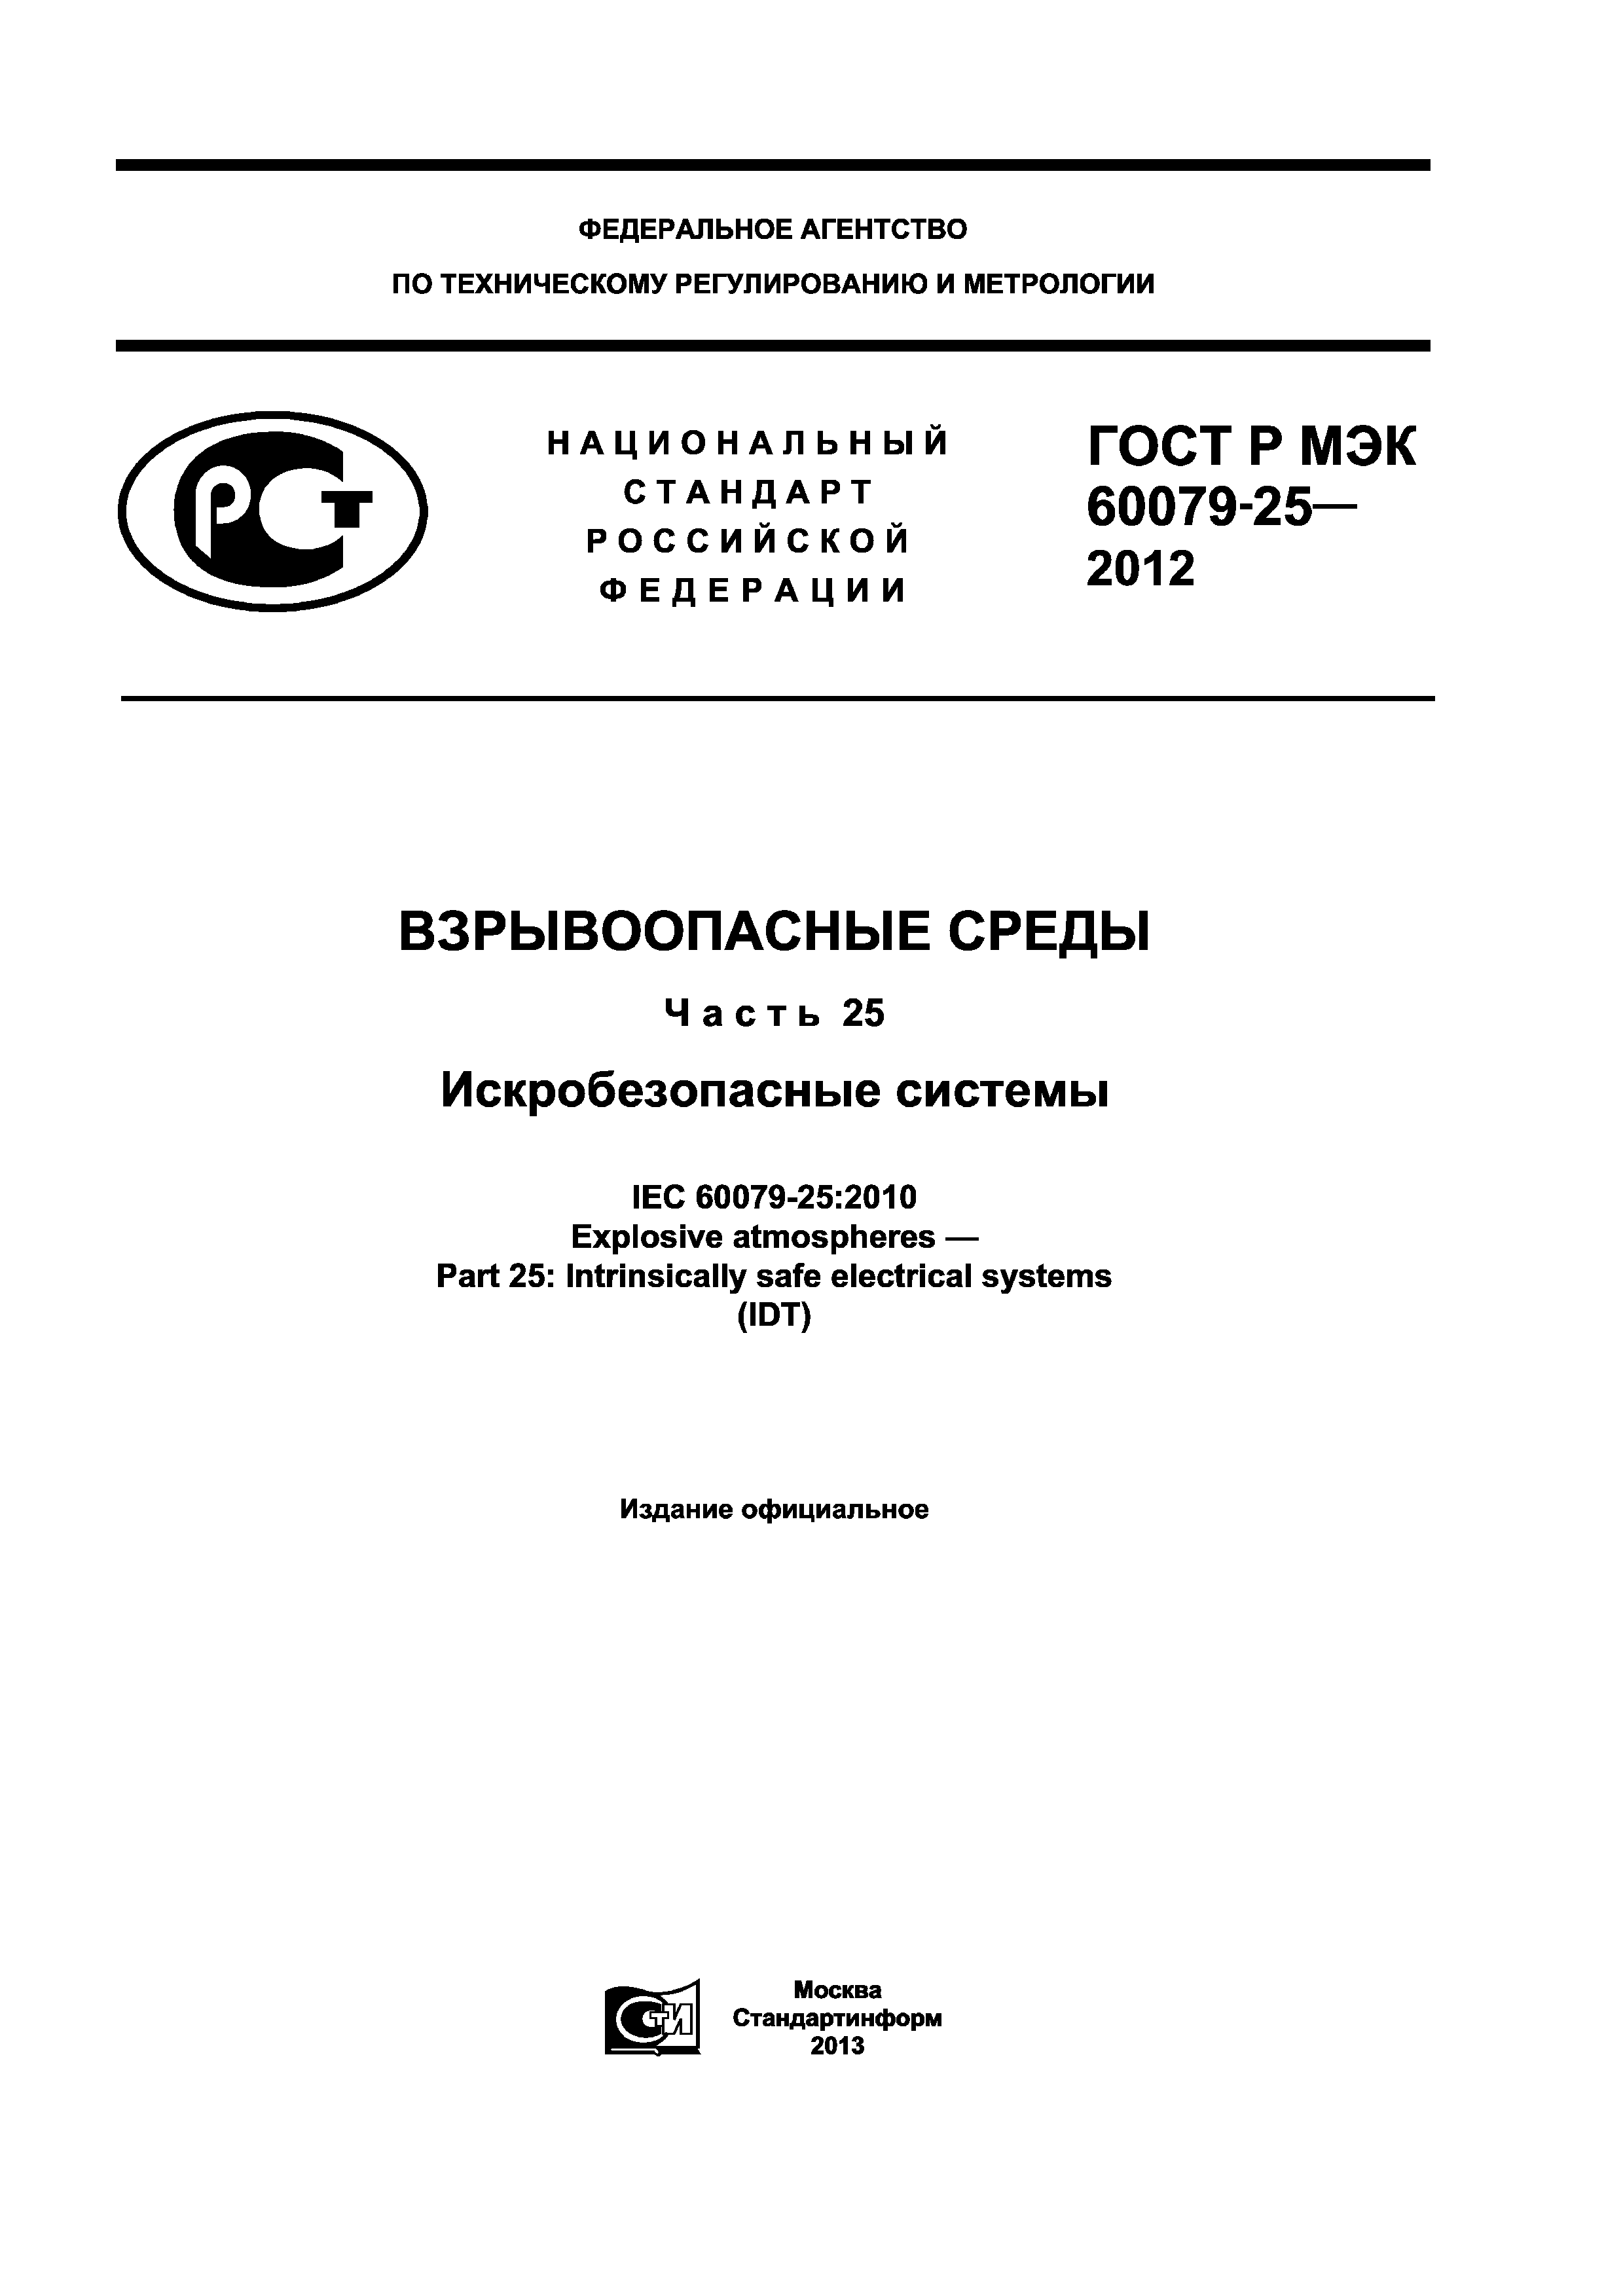 ГОСТ Р МЭК 60079-25-2012